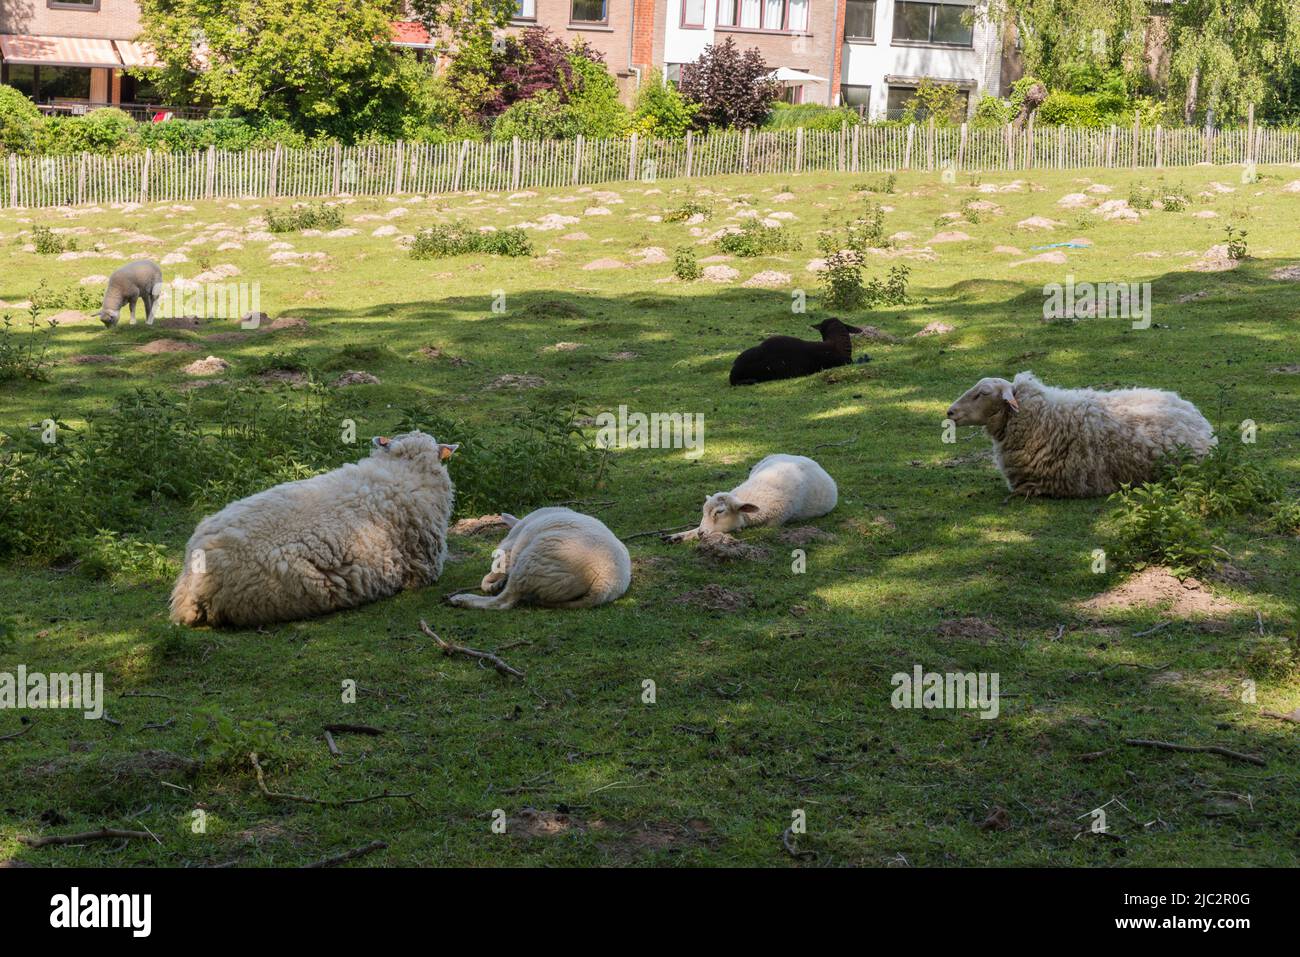 Moutons blancs, agneaux et moutons noirs dans les prés de la ville d'uccle, Bruxelles, Belgique Banque D'Images